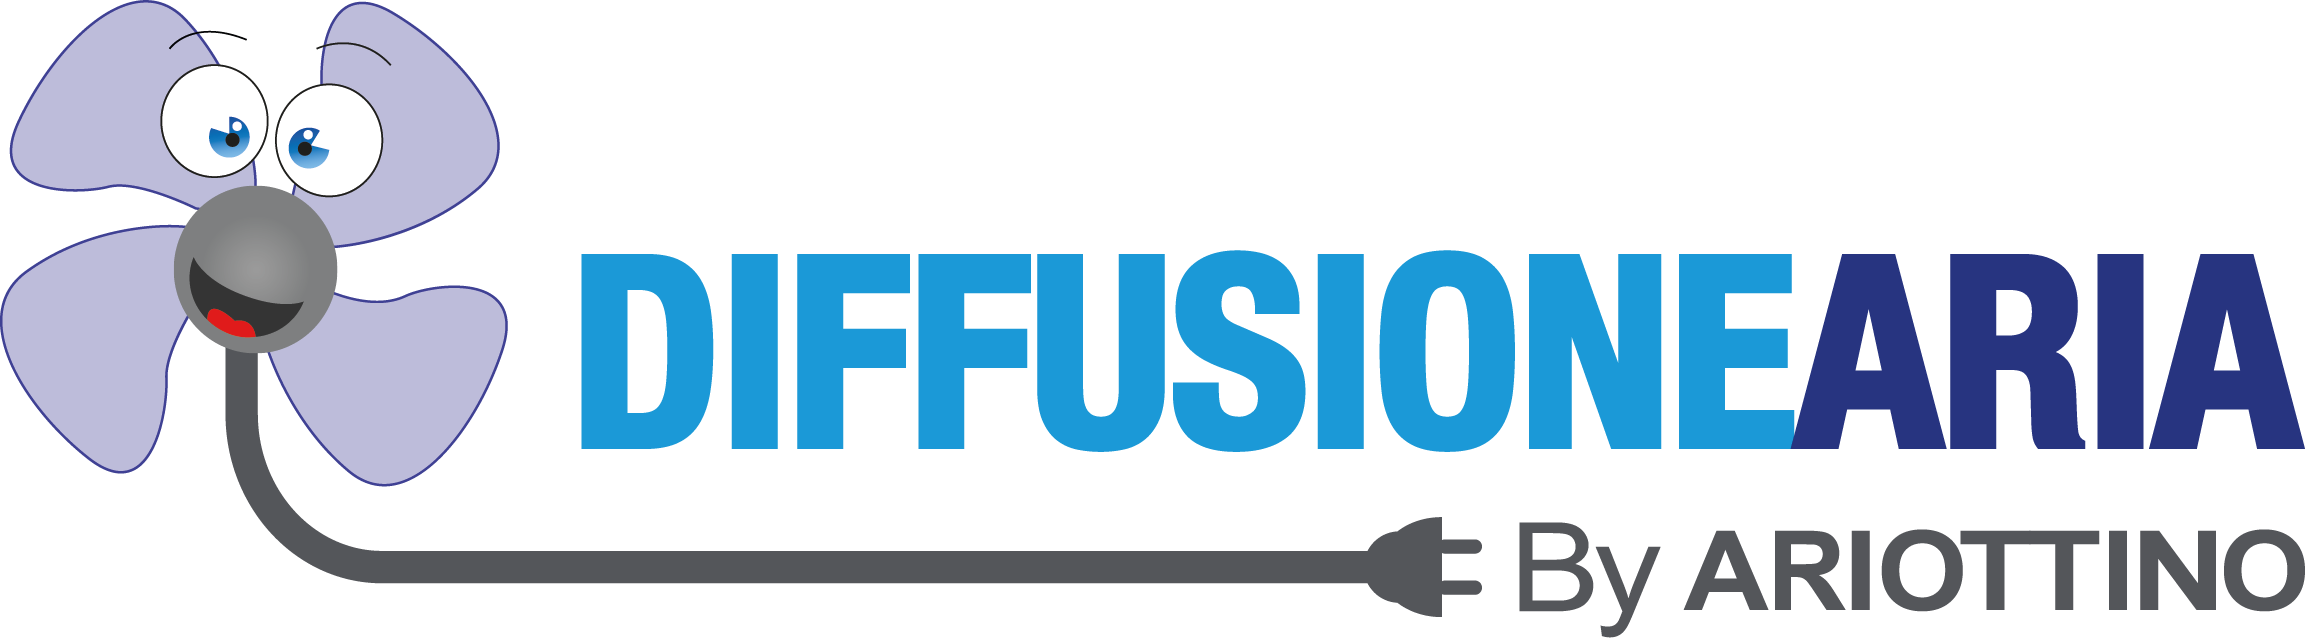 Logo_DiffusioneAria